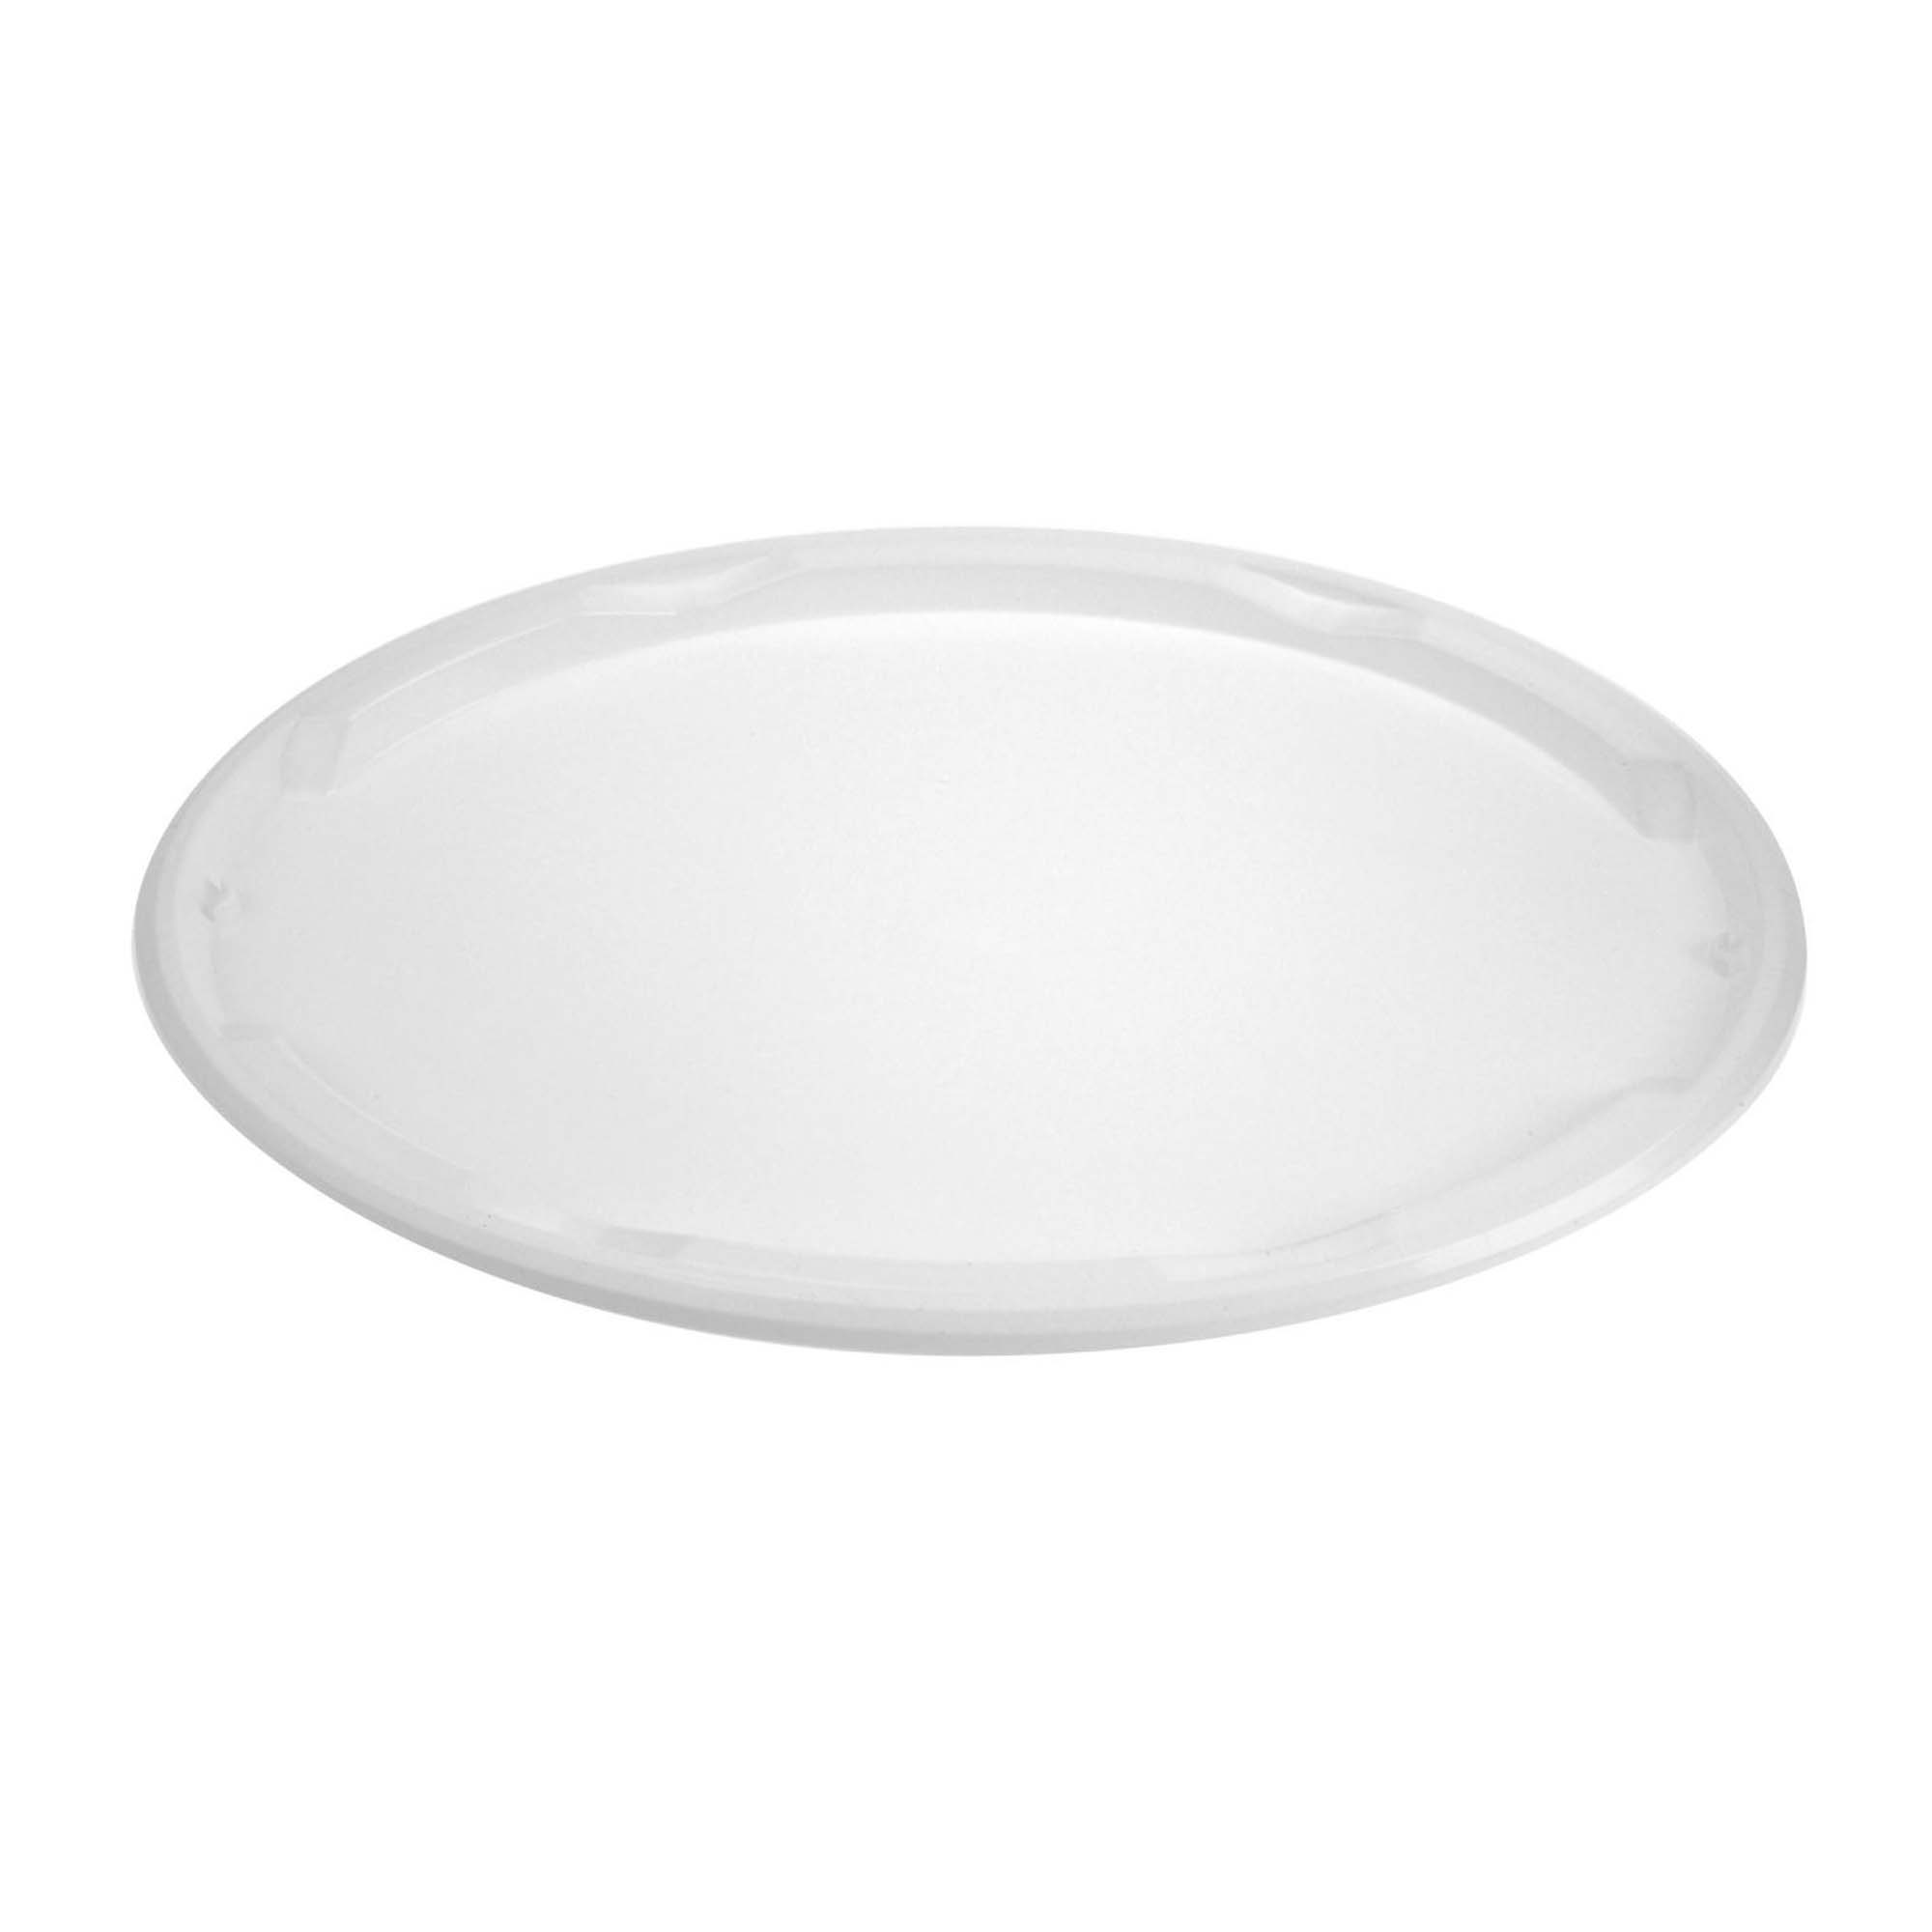 Mako Deckel für Farbrollereimer oval, 18 Liter, weiß, Kunststoff